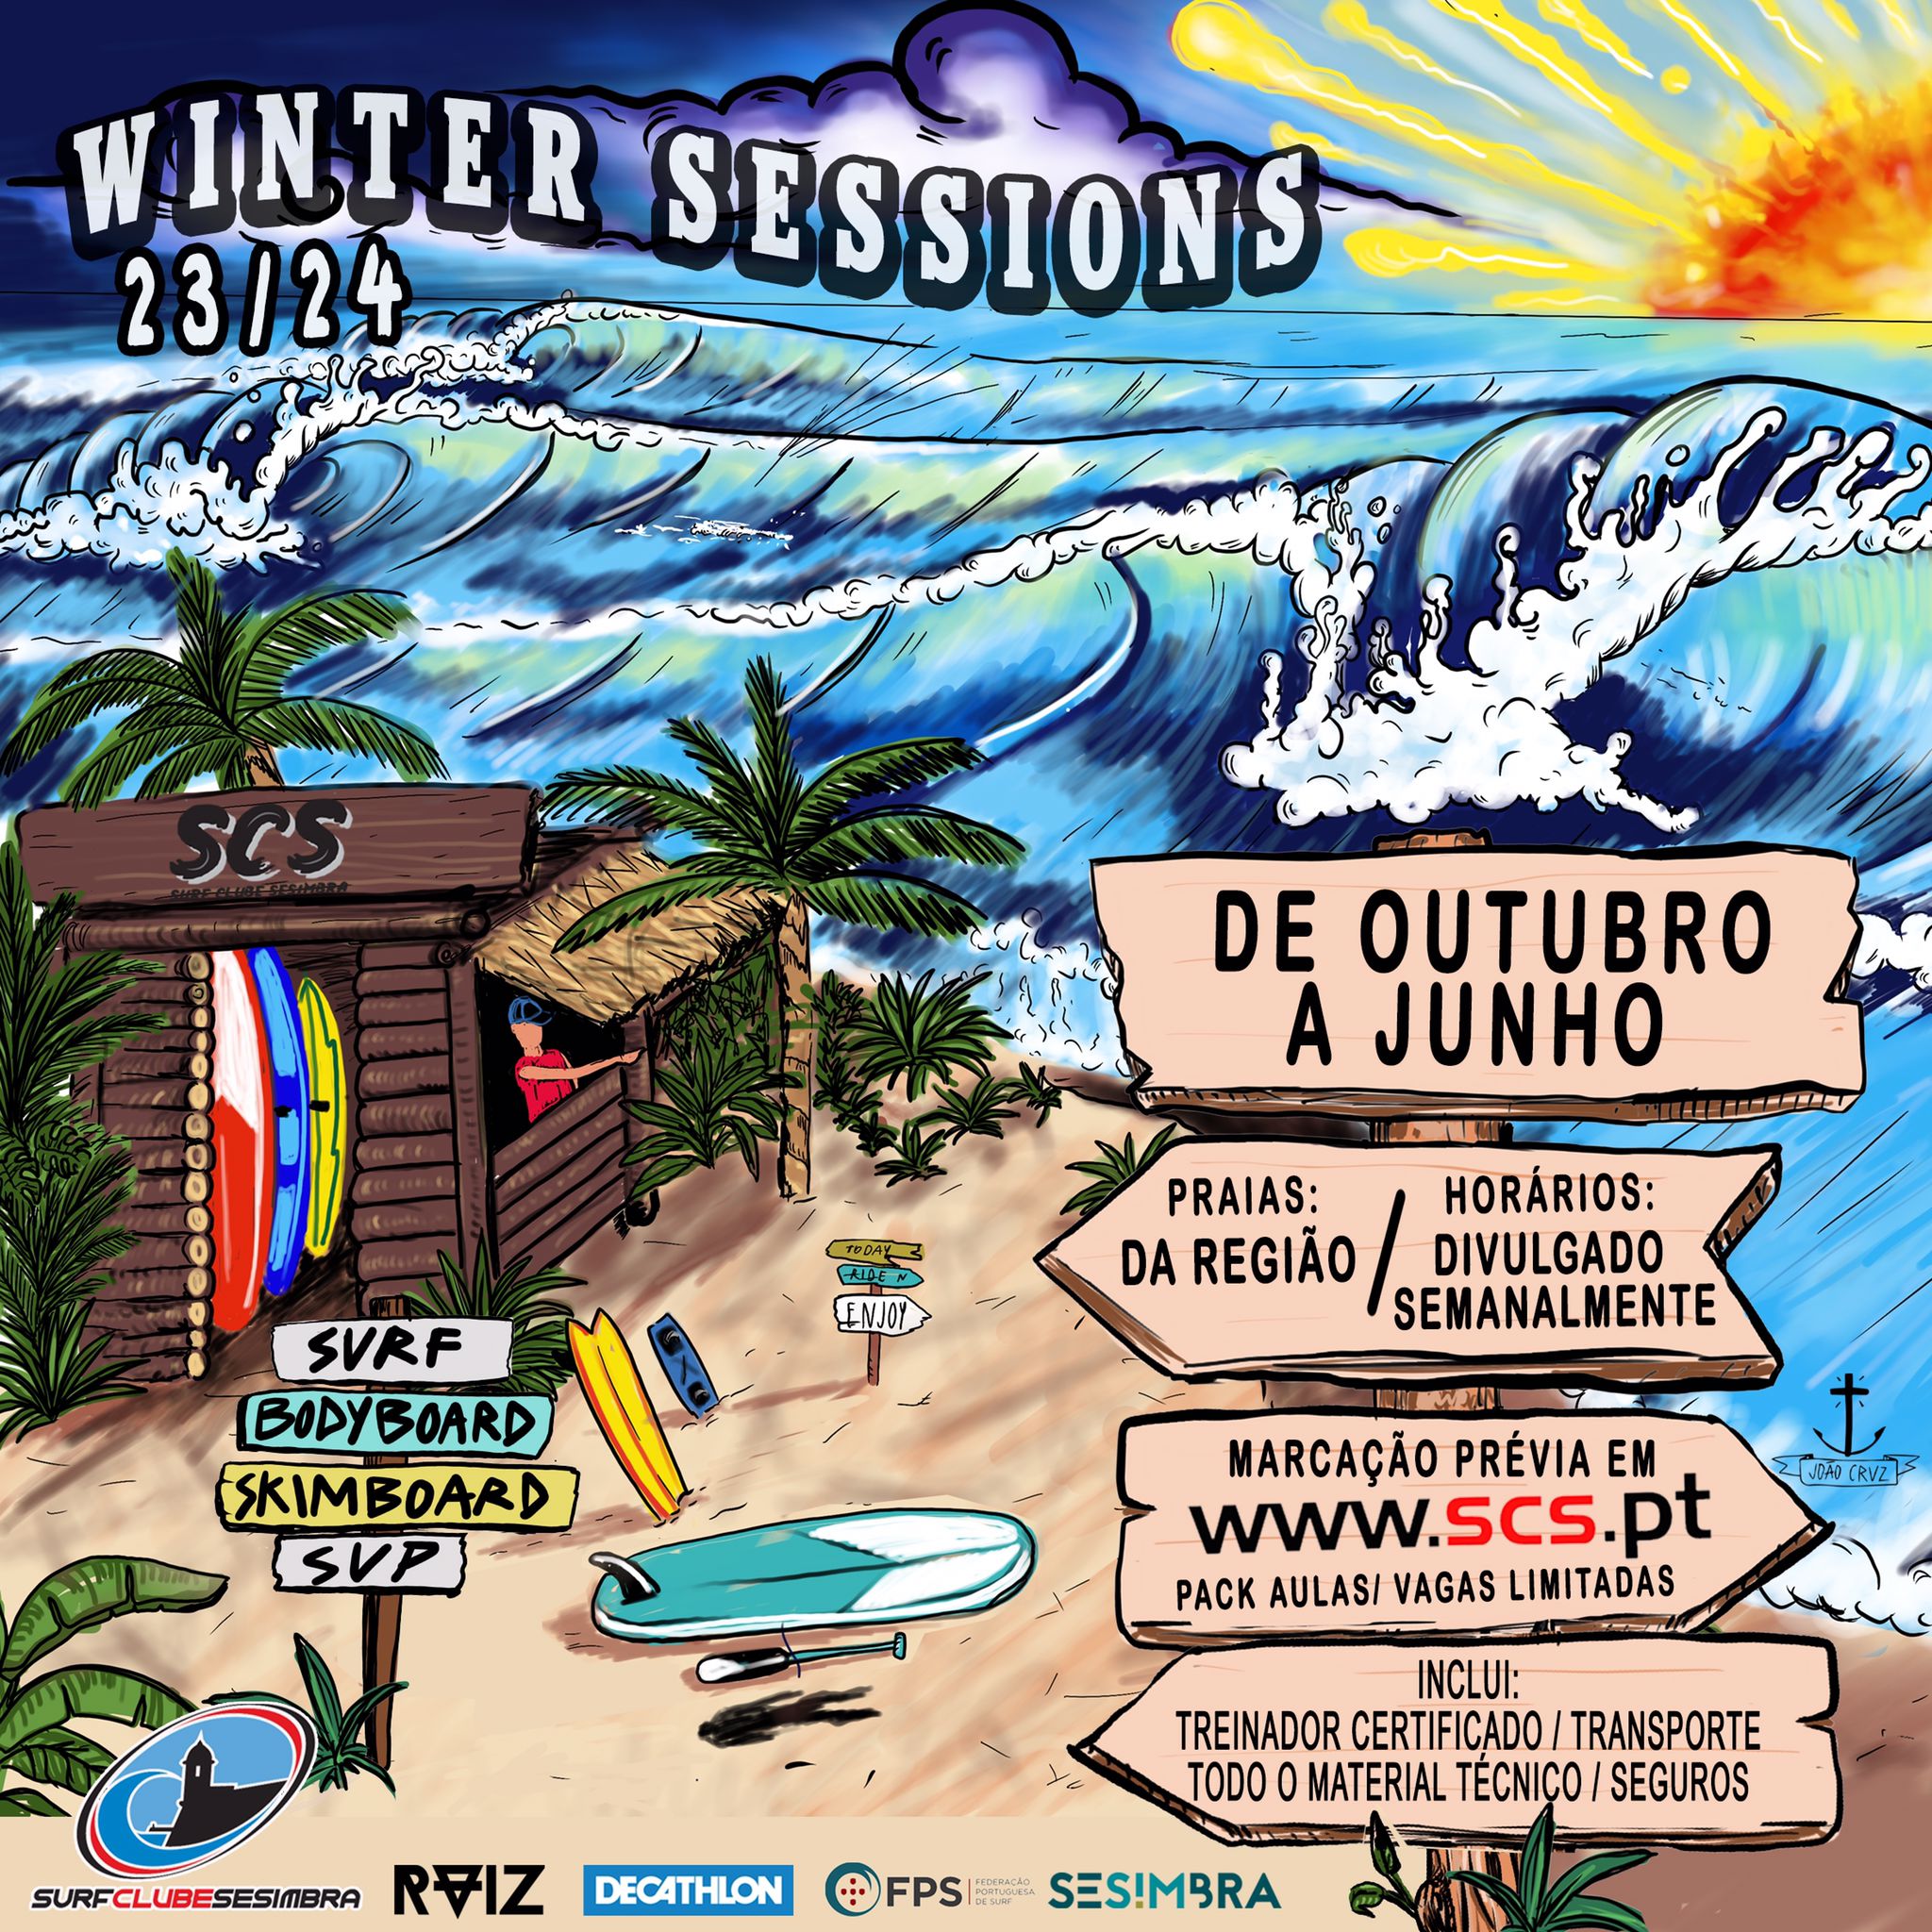 Winter Sessions - Aula de Surf e Bodyboad - Sábado dia 21 de outubro - Praia de Sesimbra